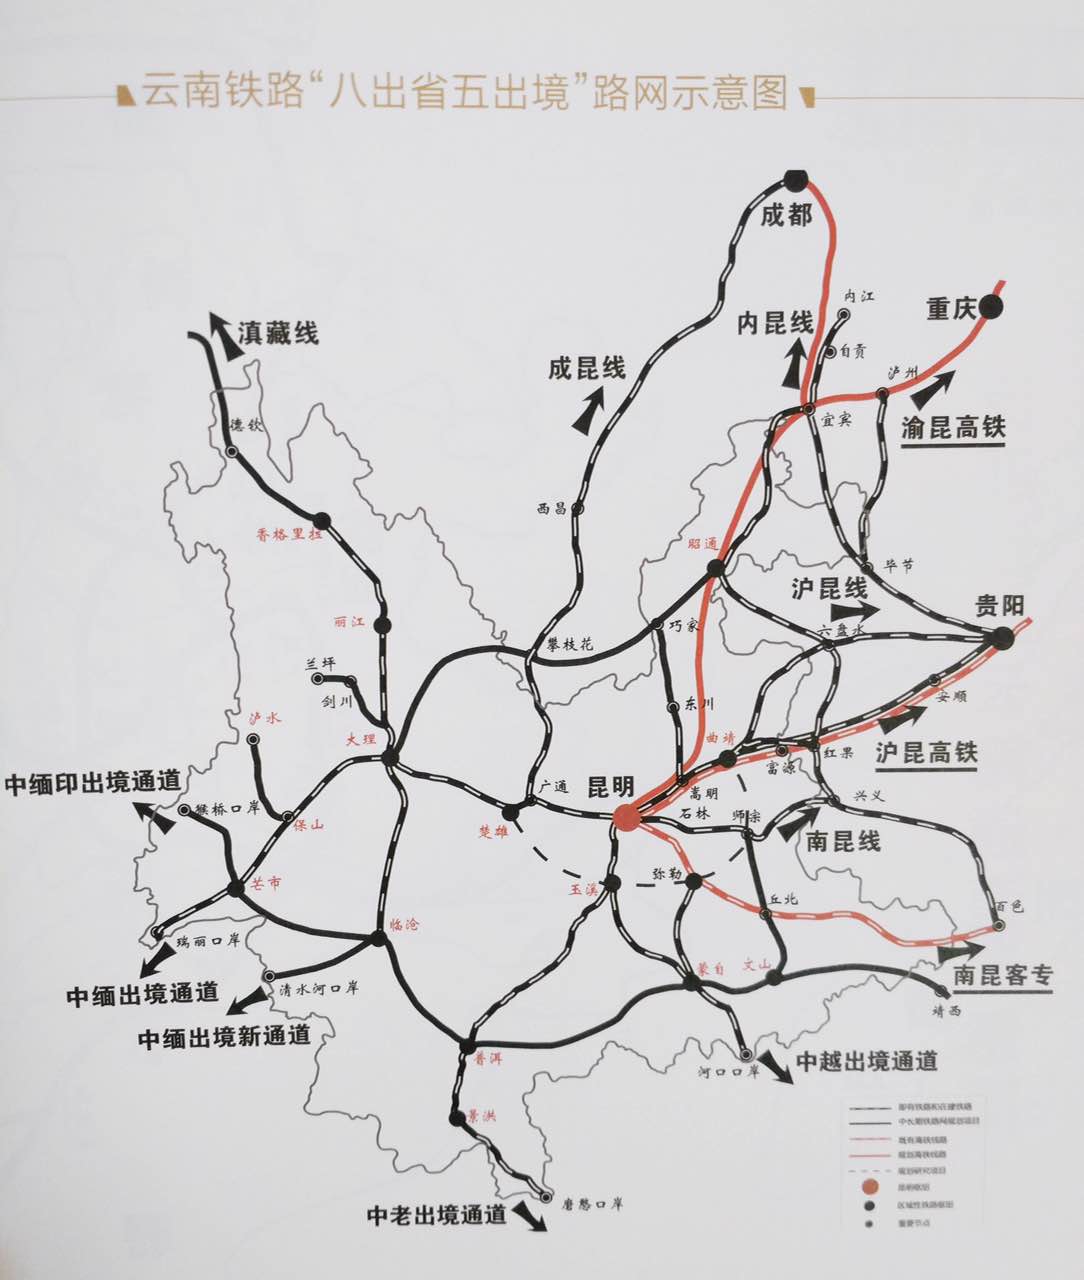 【共舞长江经济带】昆明东站:云南铁路的"心脏" 打造升级为辐射南亚图片